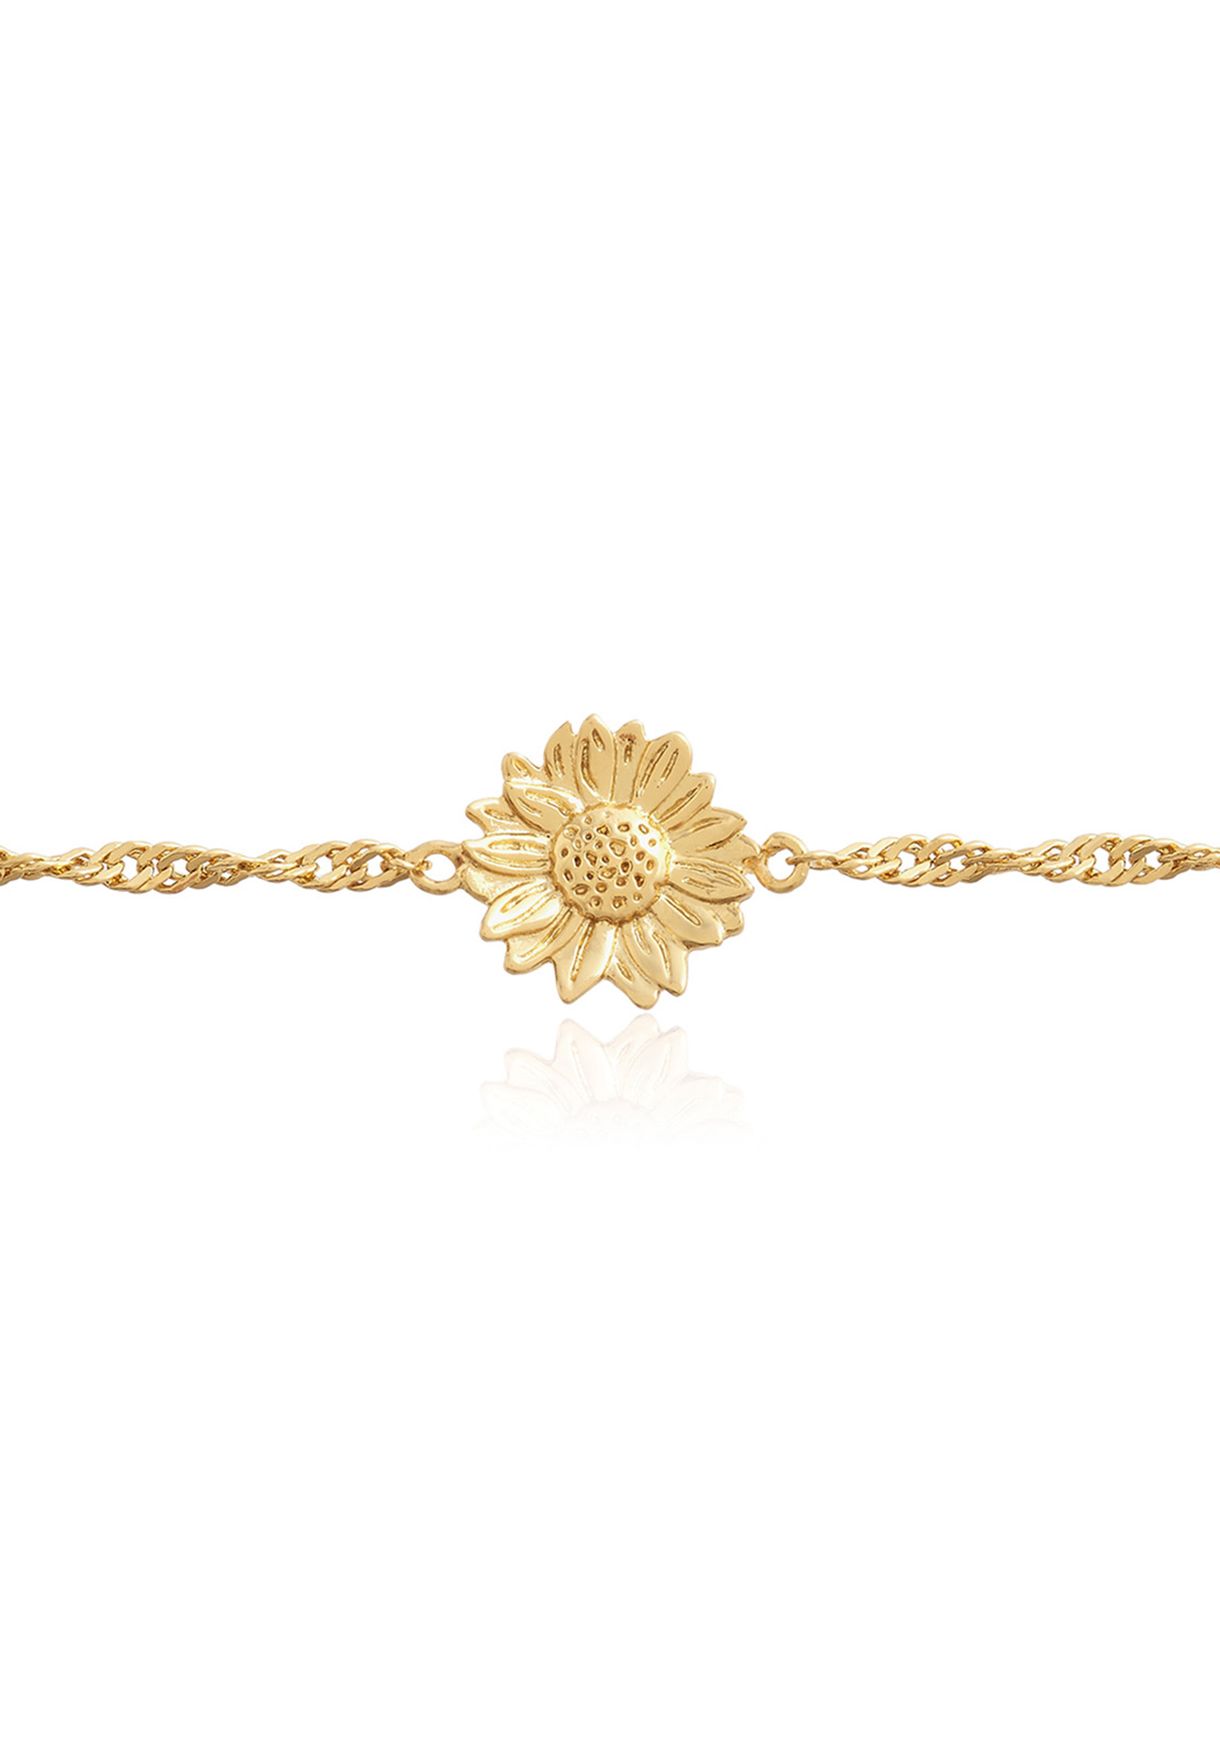 Sunflower Hand Chain Bracelet